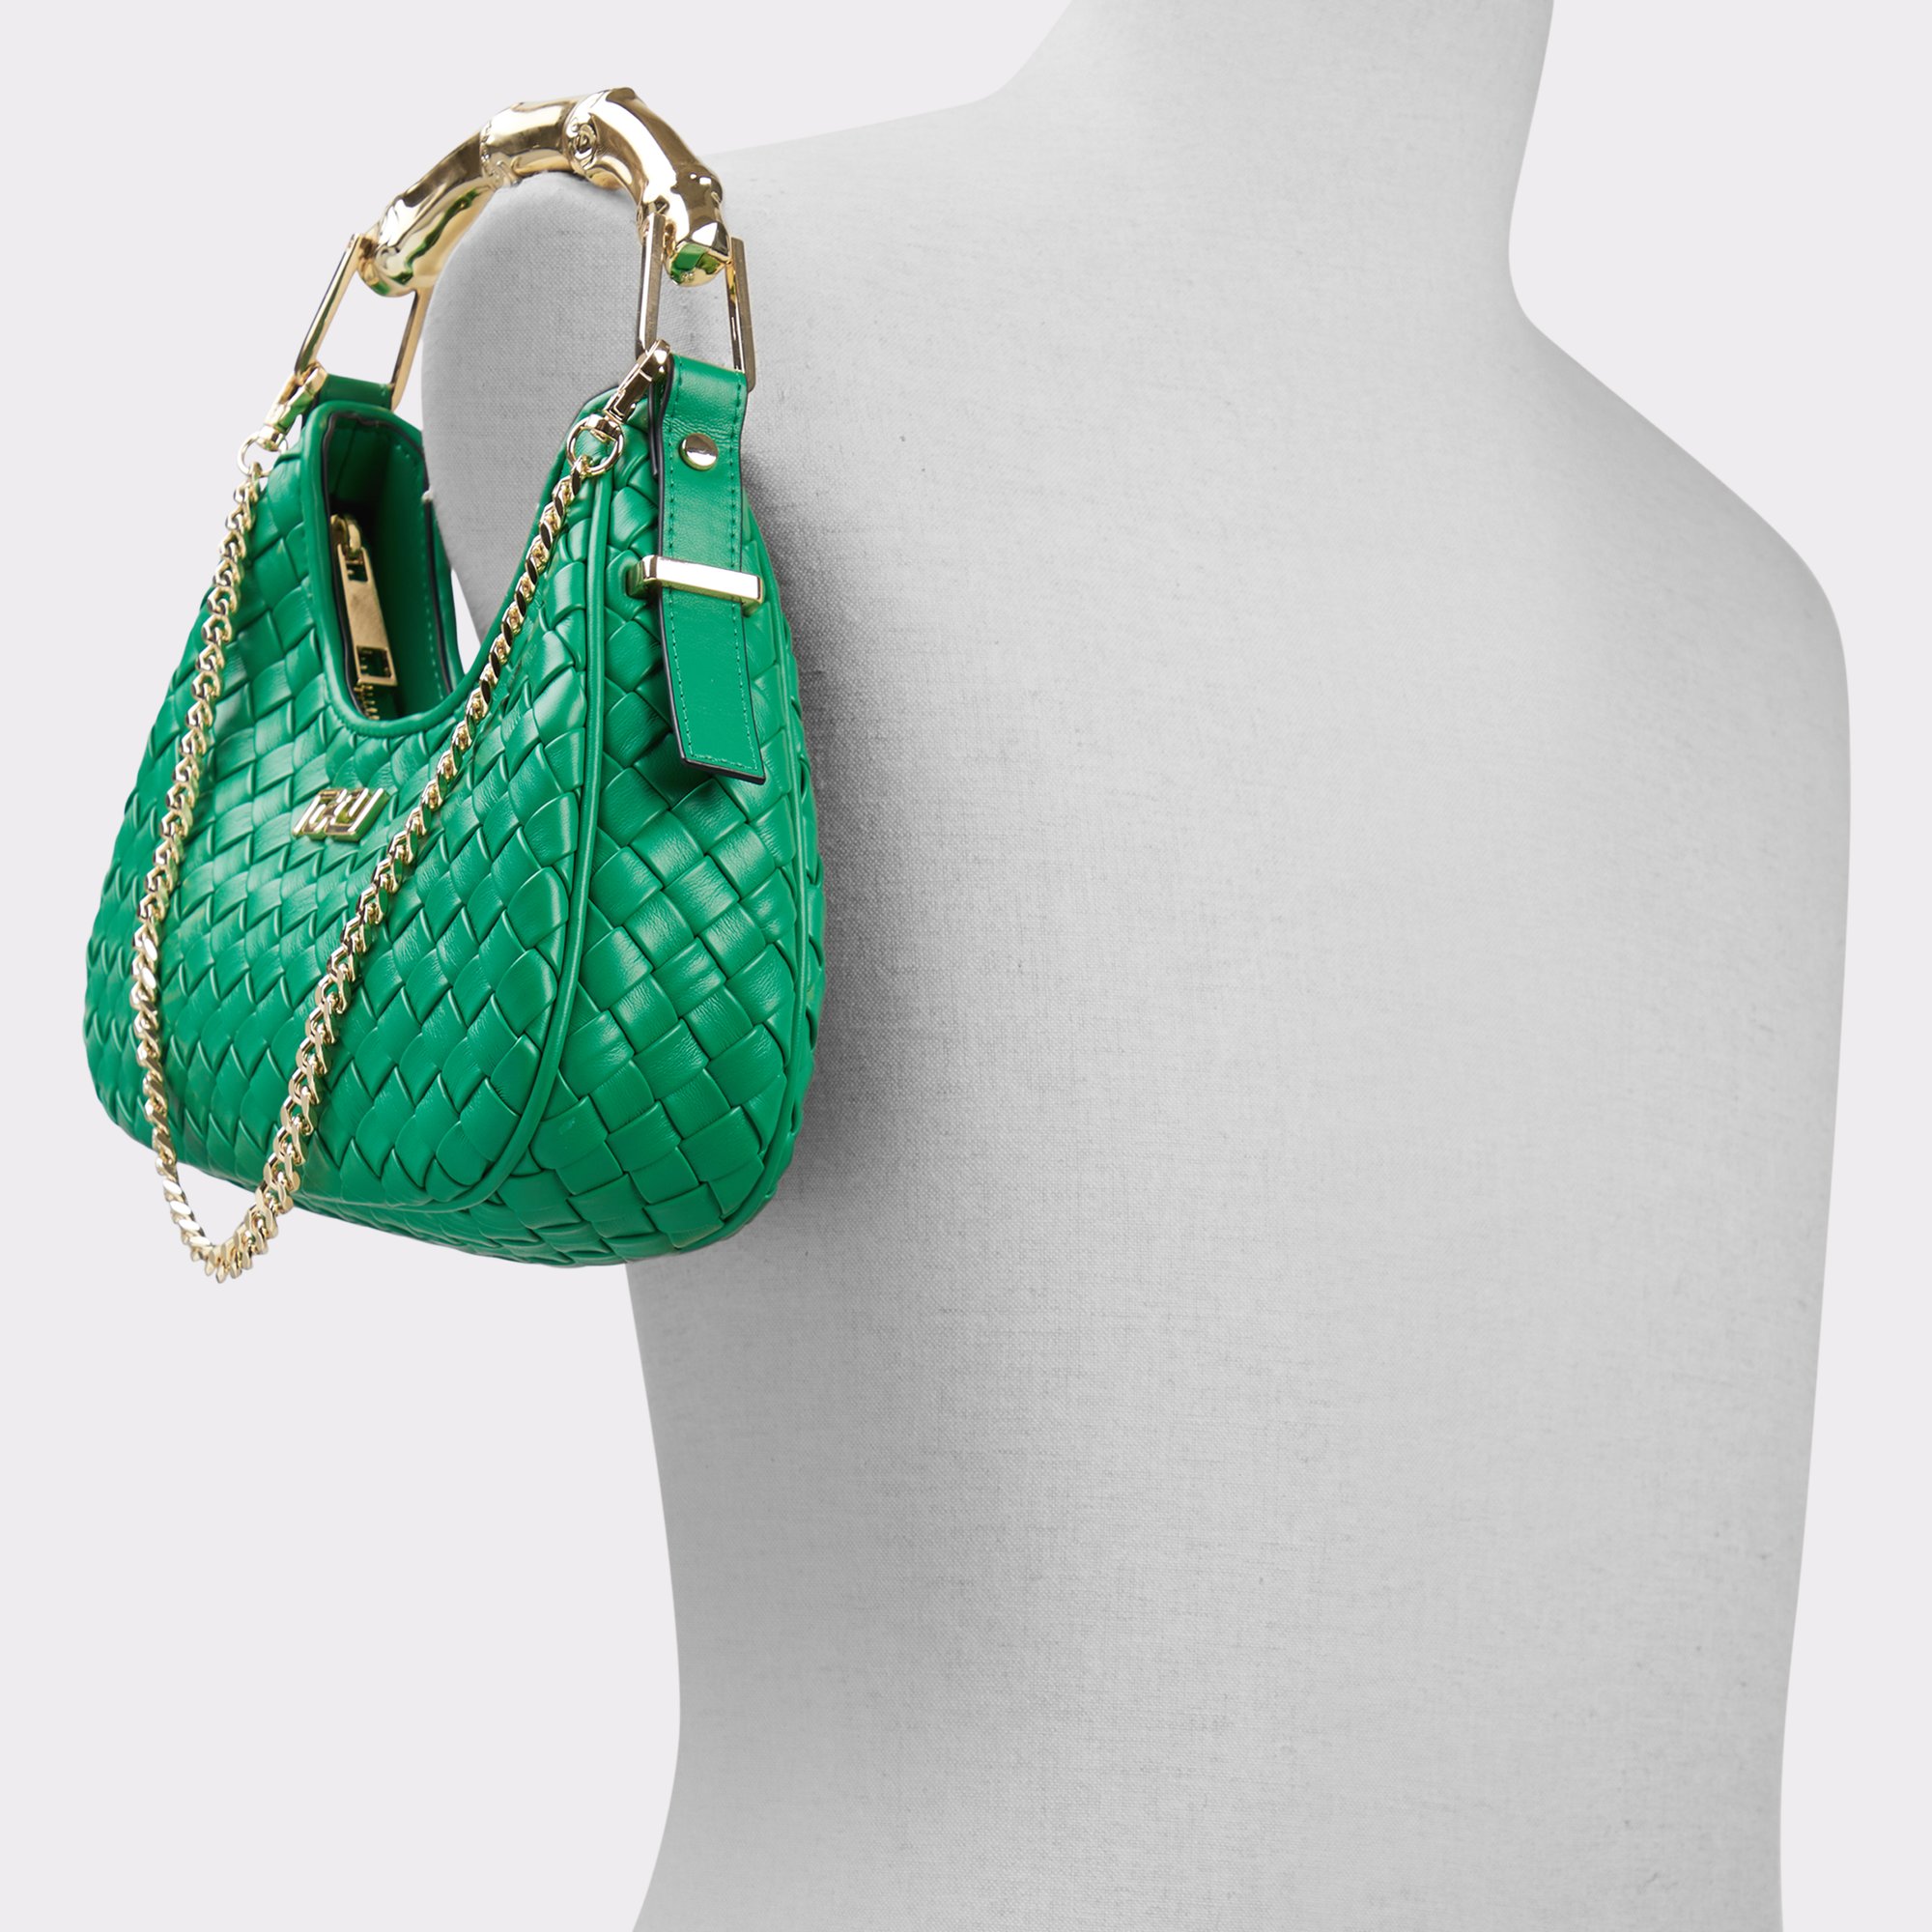 Hananx Medium Green Women's Top Handle Bags | ALDO US